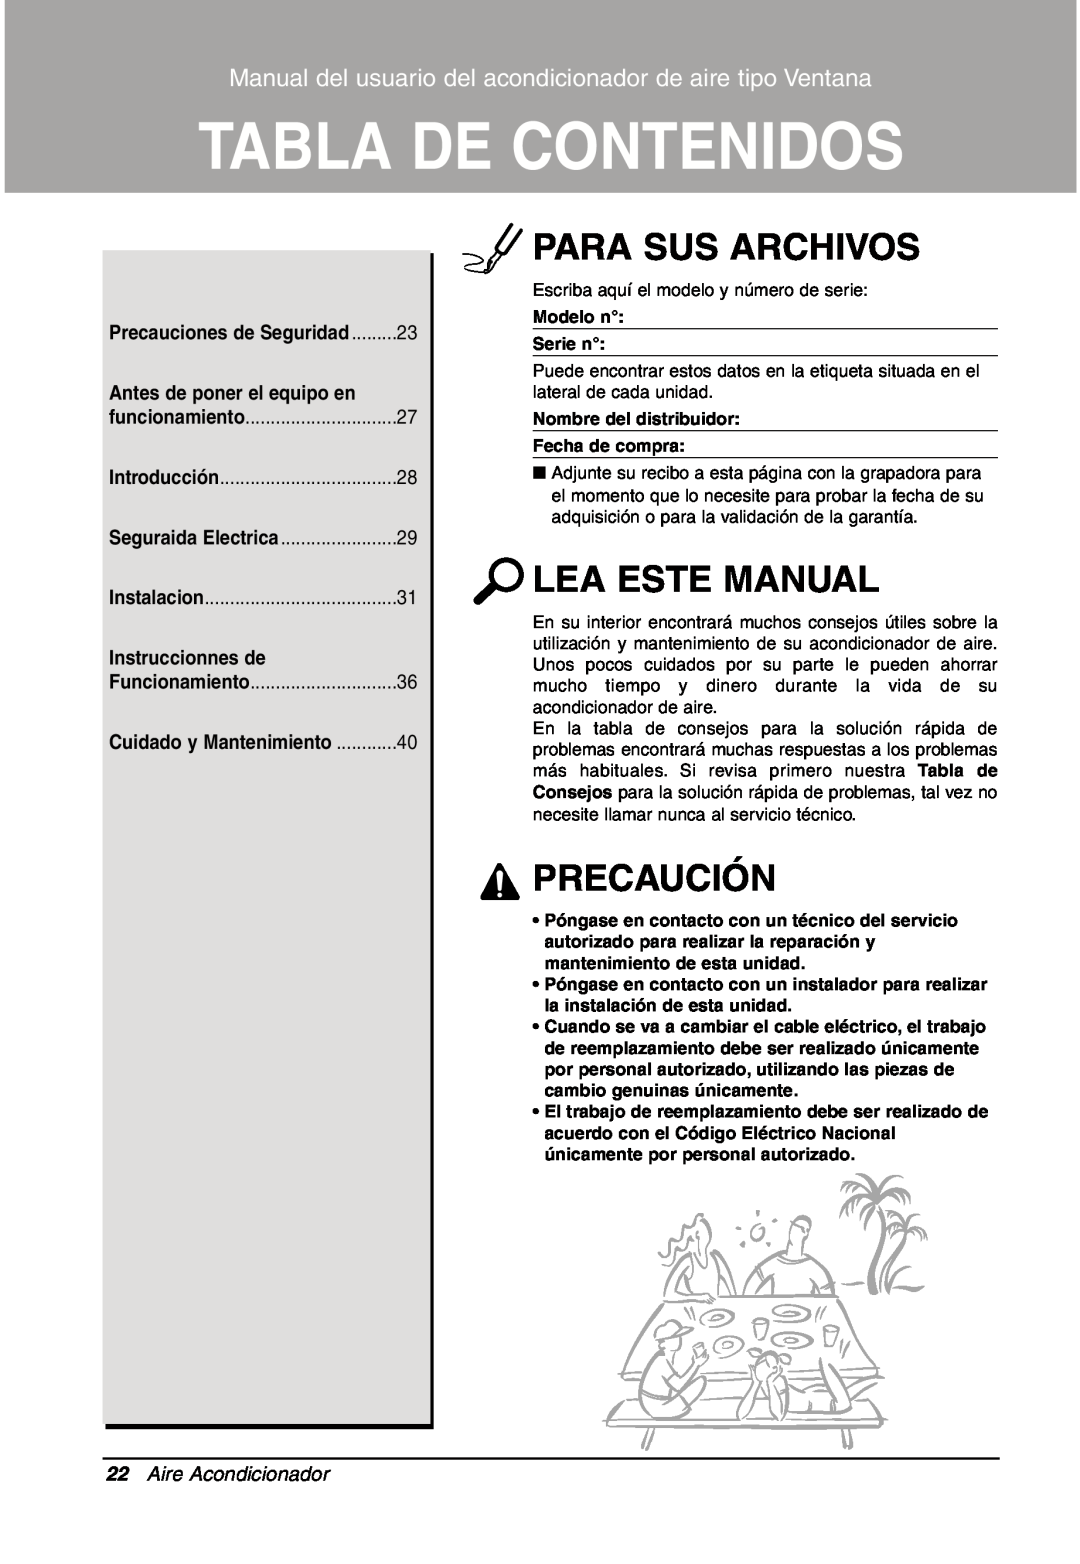 LG Electronics LW701 HR Para Sus Archivos, Lea Este Manual, Precaución, Tabla De Contenidos, Antes de poner el equipo en 